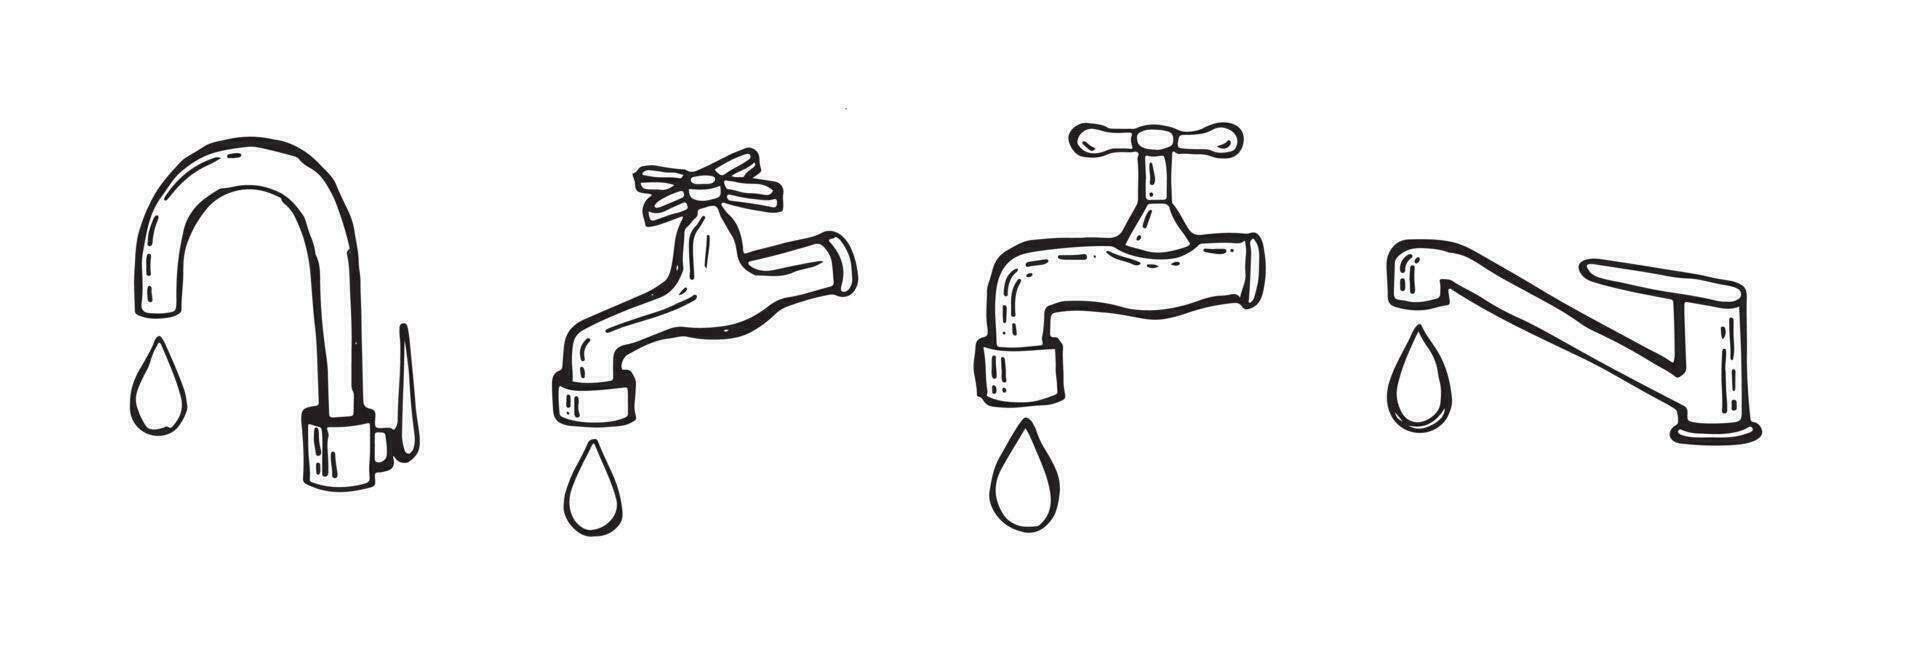 acqua rubinetto con far cadere, vettore illustrazione